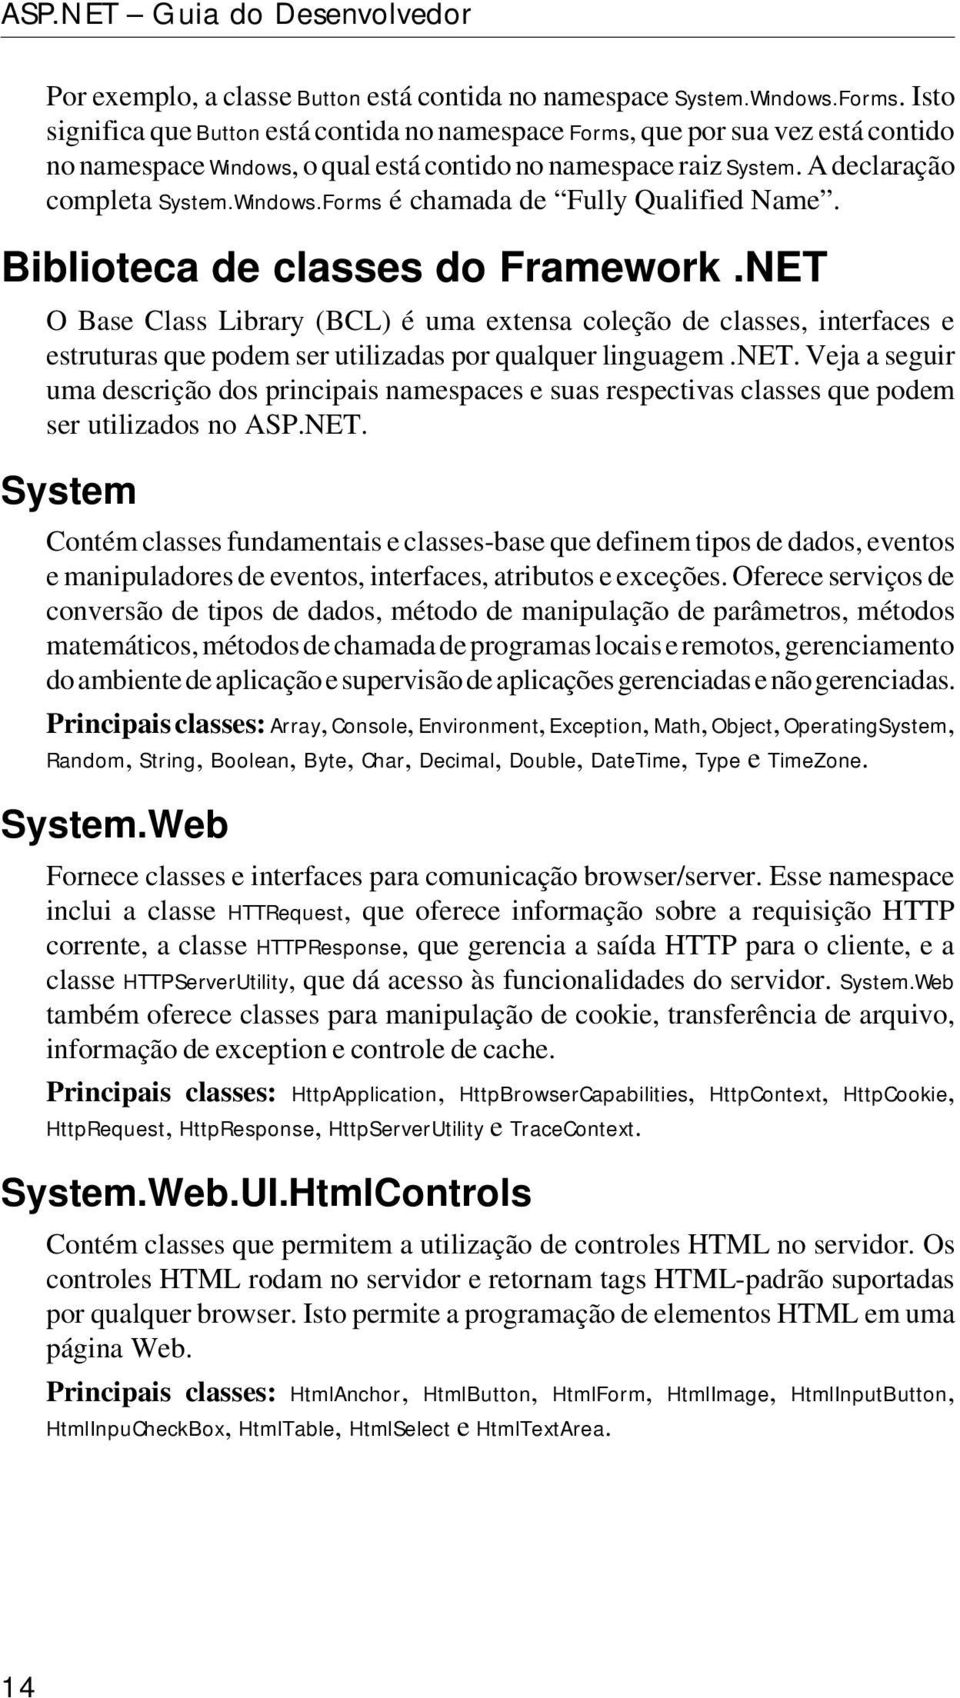 Biblioteca de classes do Framework.NET O Base Class Library (BCL) é uma extensa coleção de classes, interfaces e estruturas que podem ser utilizadas por qualquer linguagem.net.